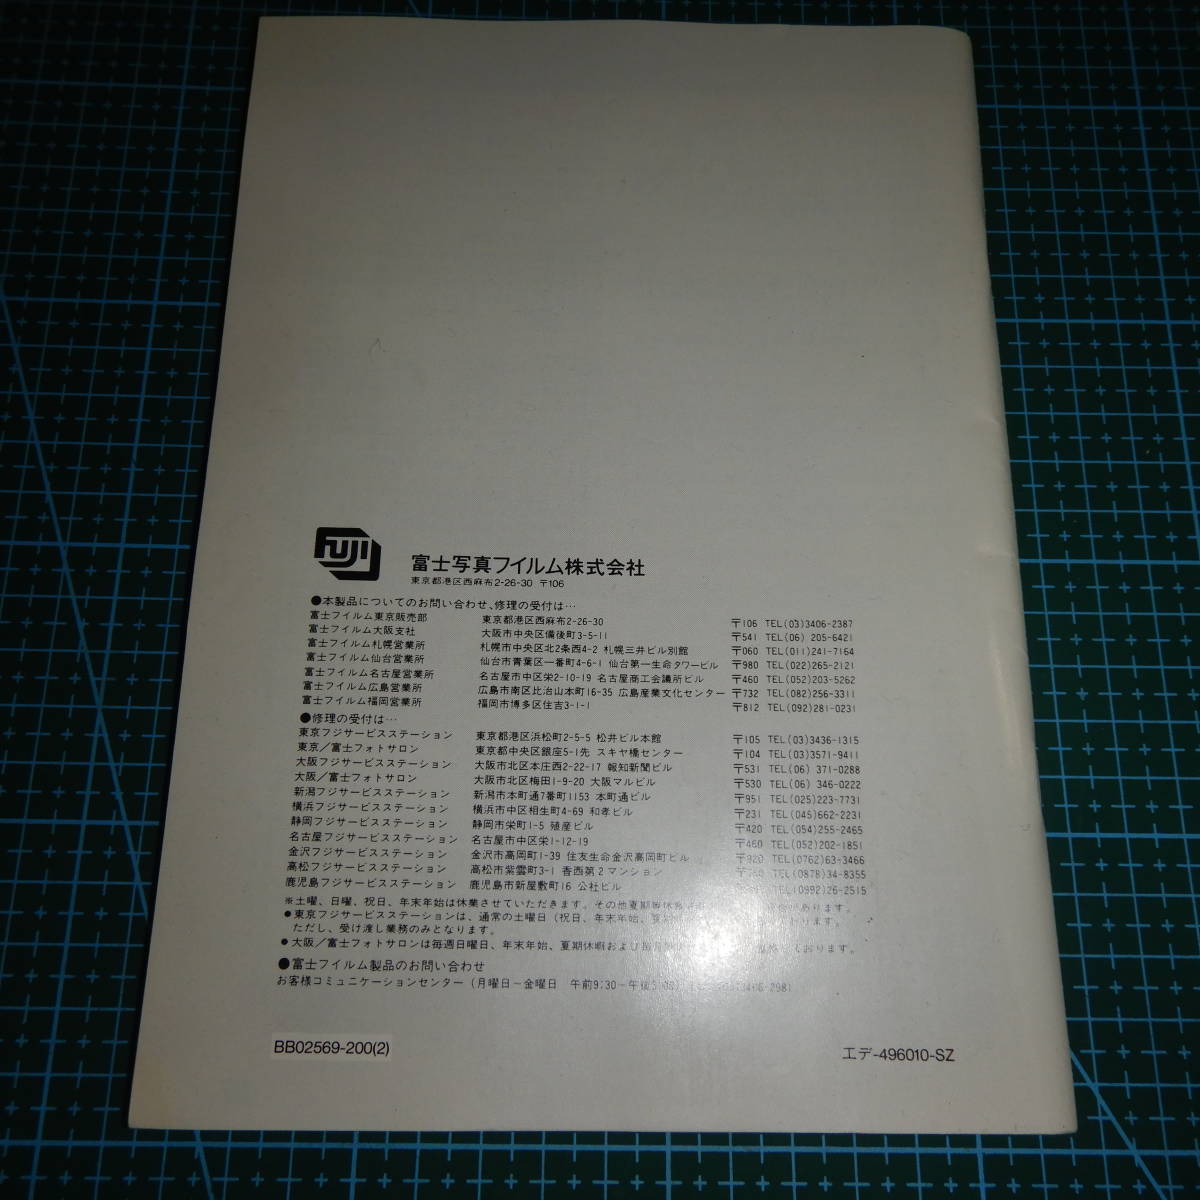  Fuji film FUJIX-Hi8 FH-35SZ use instructions secondhand goods R01938